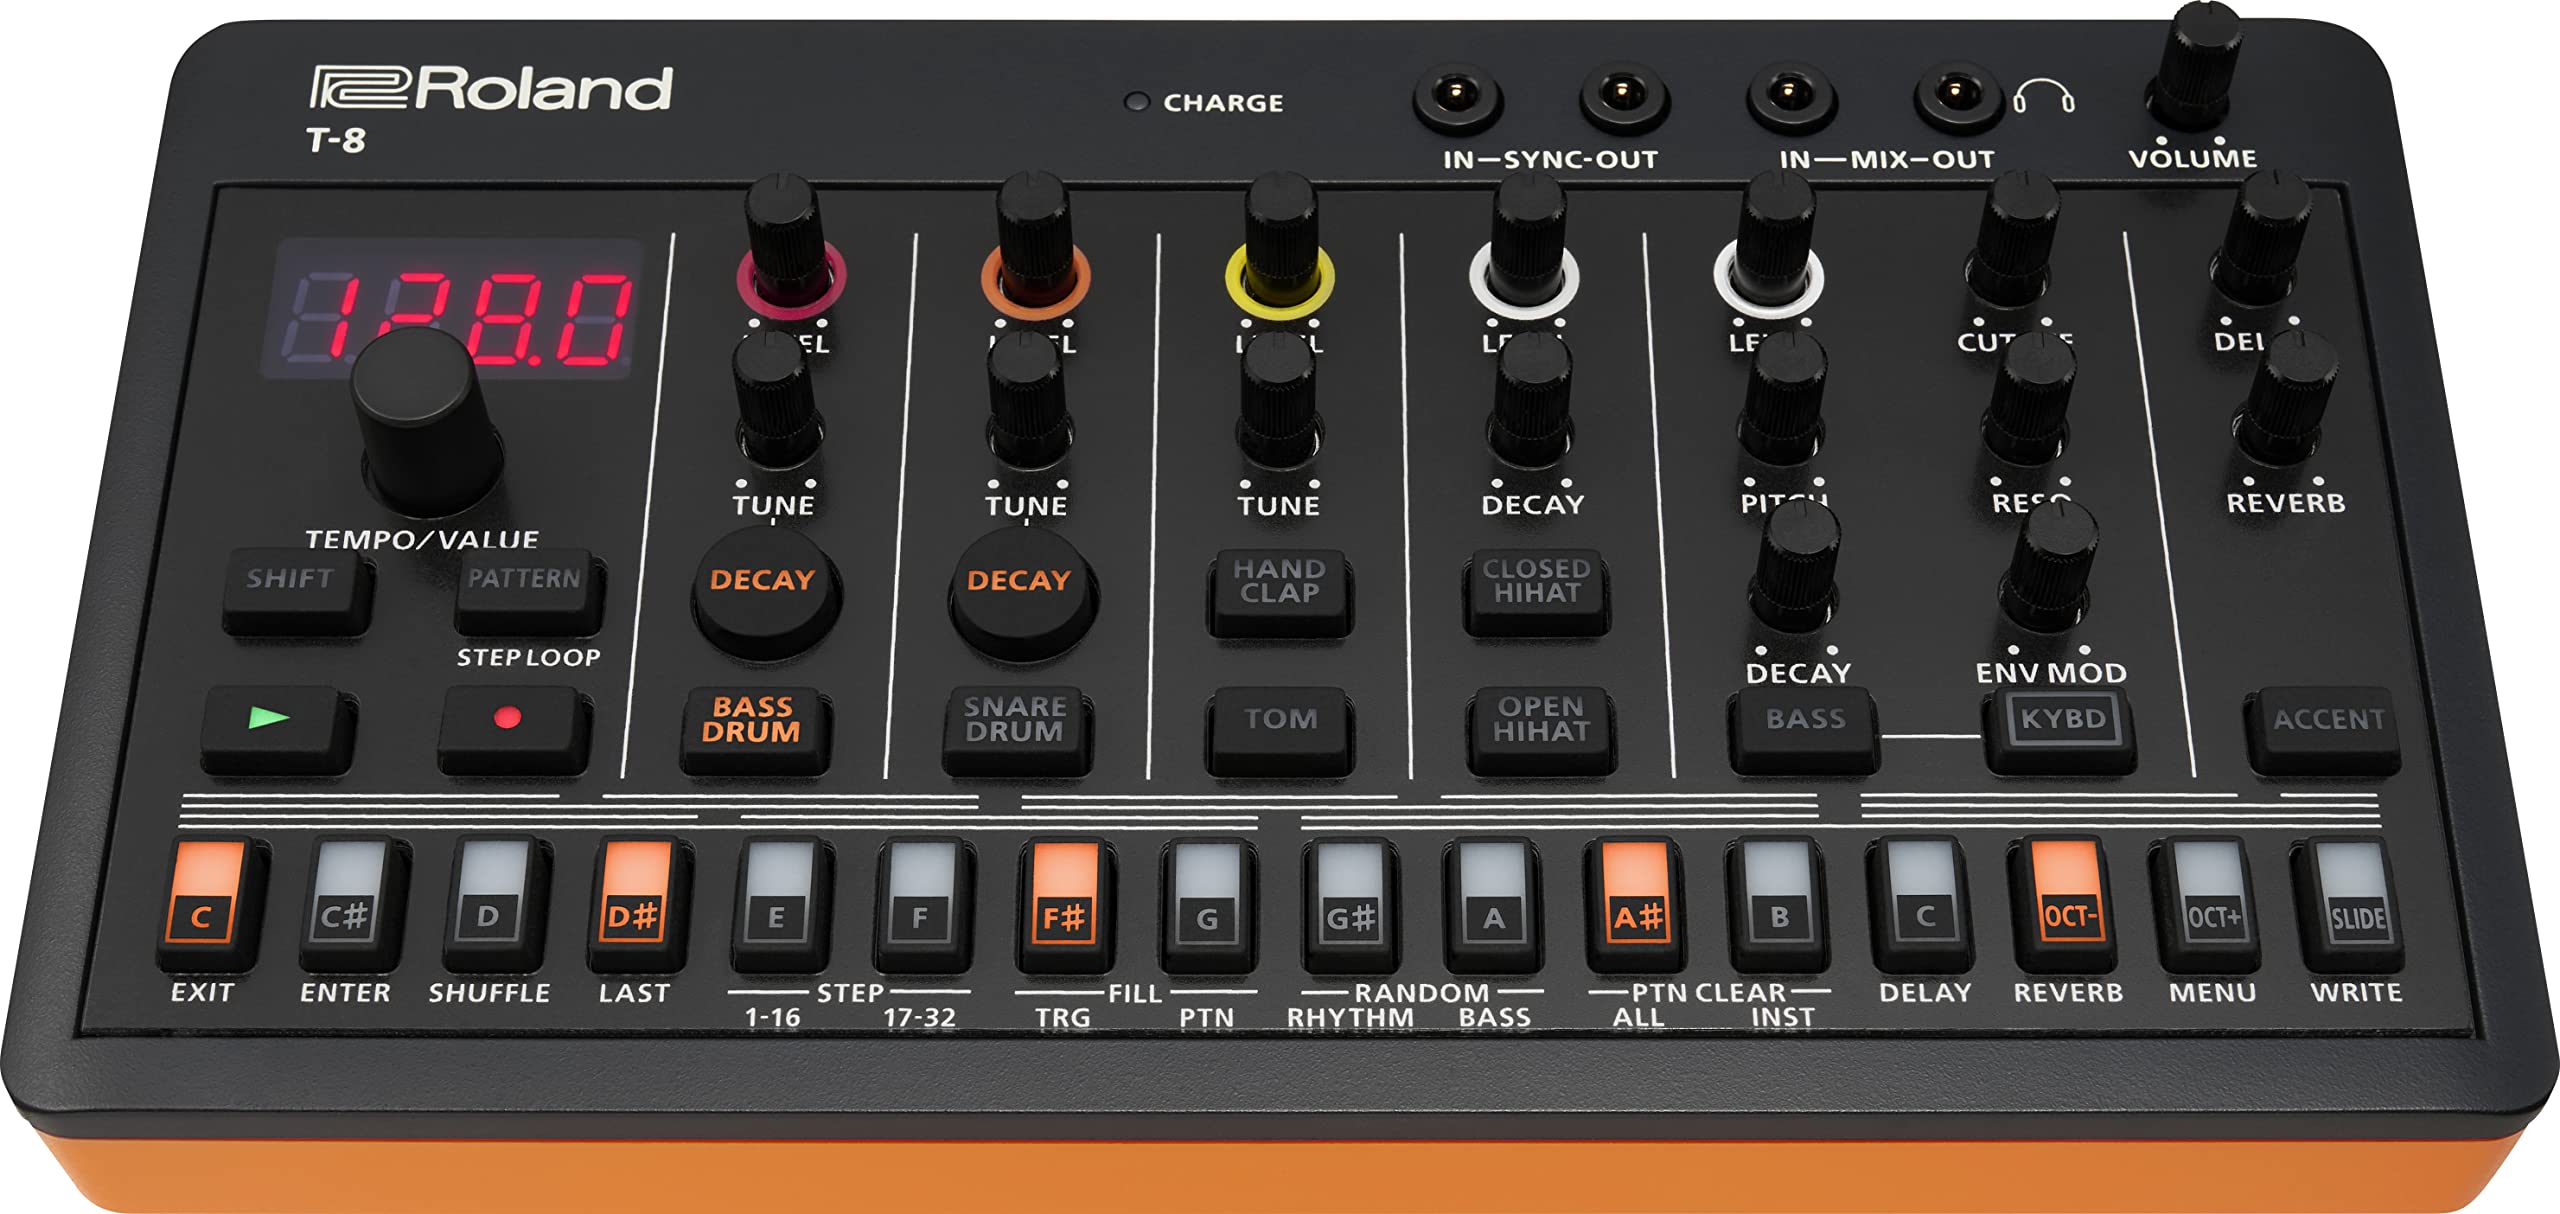 Roland  Sounds der ultraportablen Bassmaschine AIRA Compact T-8 Beat | TR-REC Drum-Sequenzer | Sechs Rhythmus-Tracks | Eingebaute Effekte | USB- und MIDI-Konnektivität